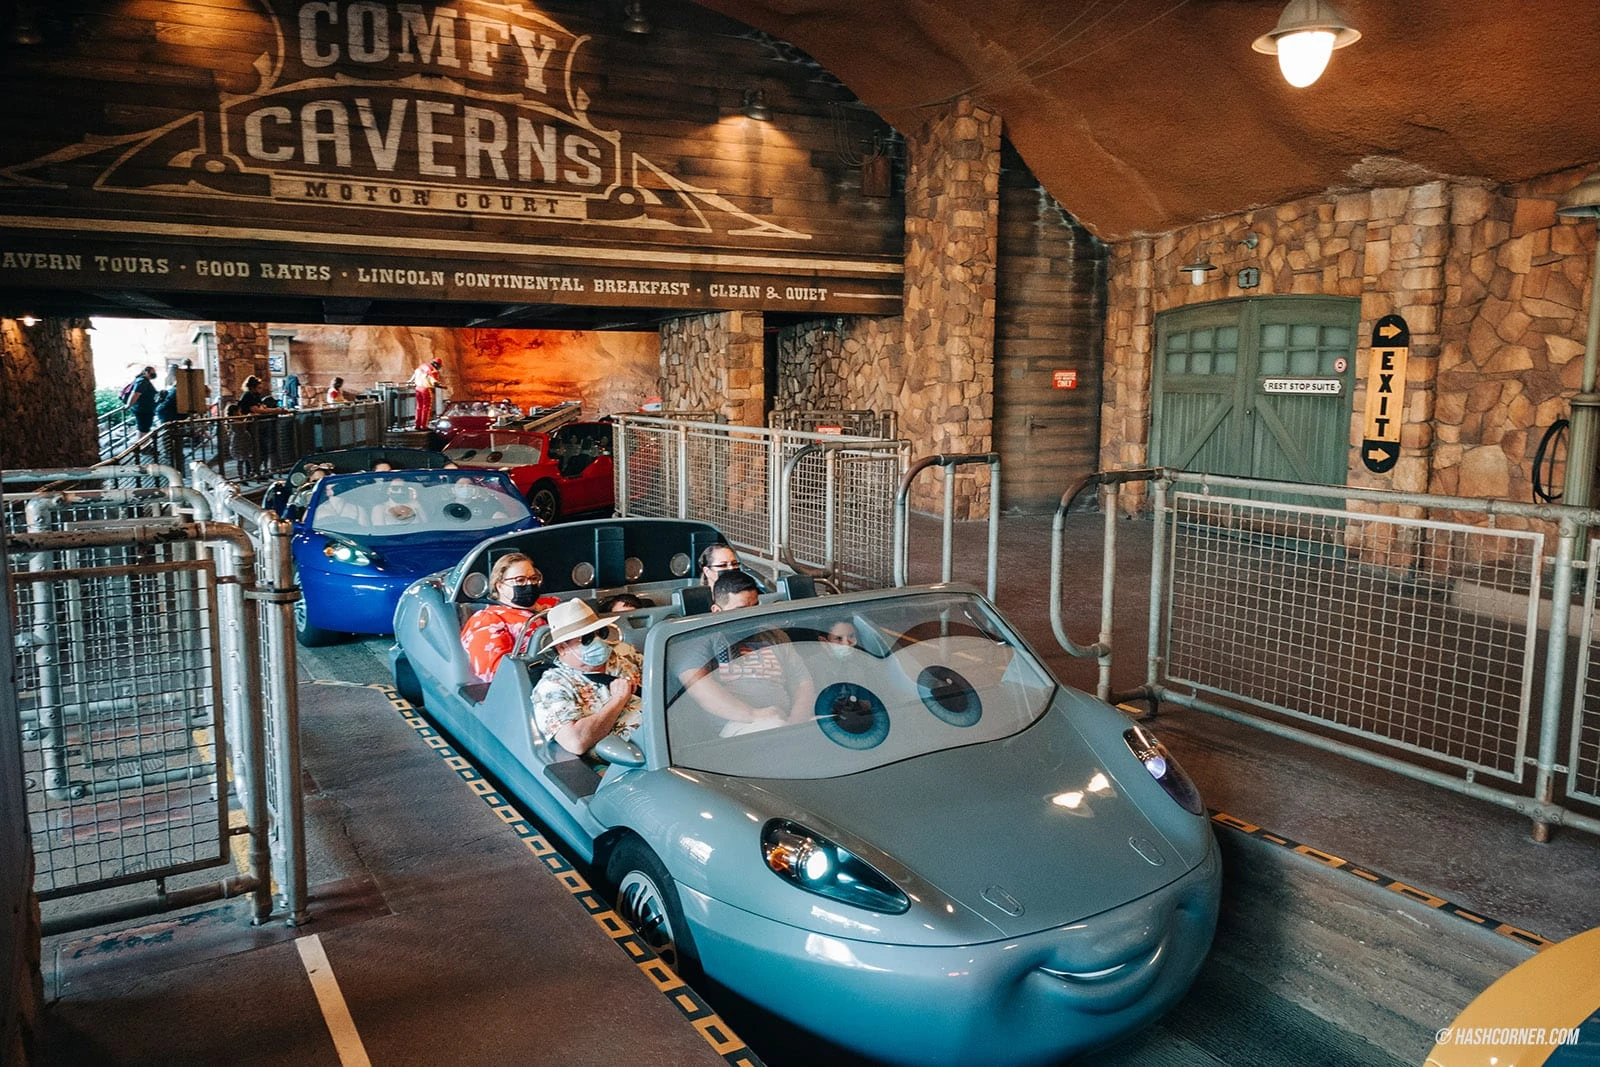 รีวิว Disney California Adventure Park x แคลิฟอร์เนีย เล่นหนักจัดเต็ม!